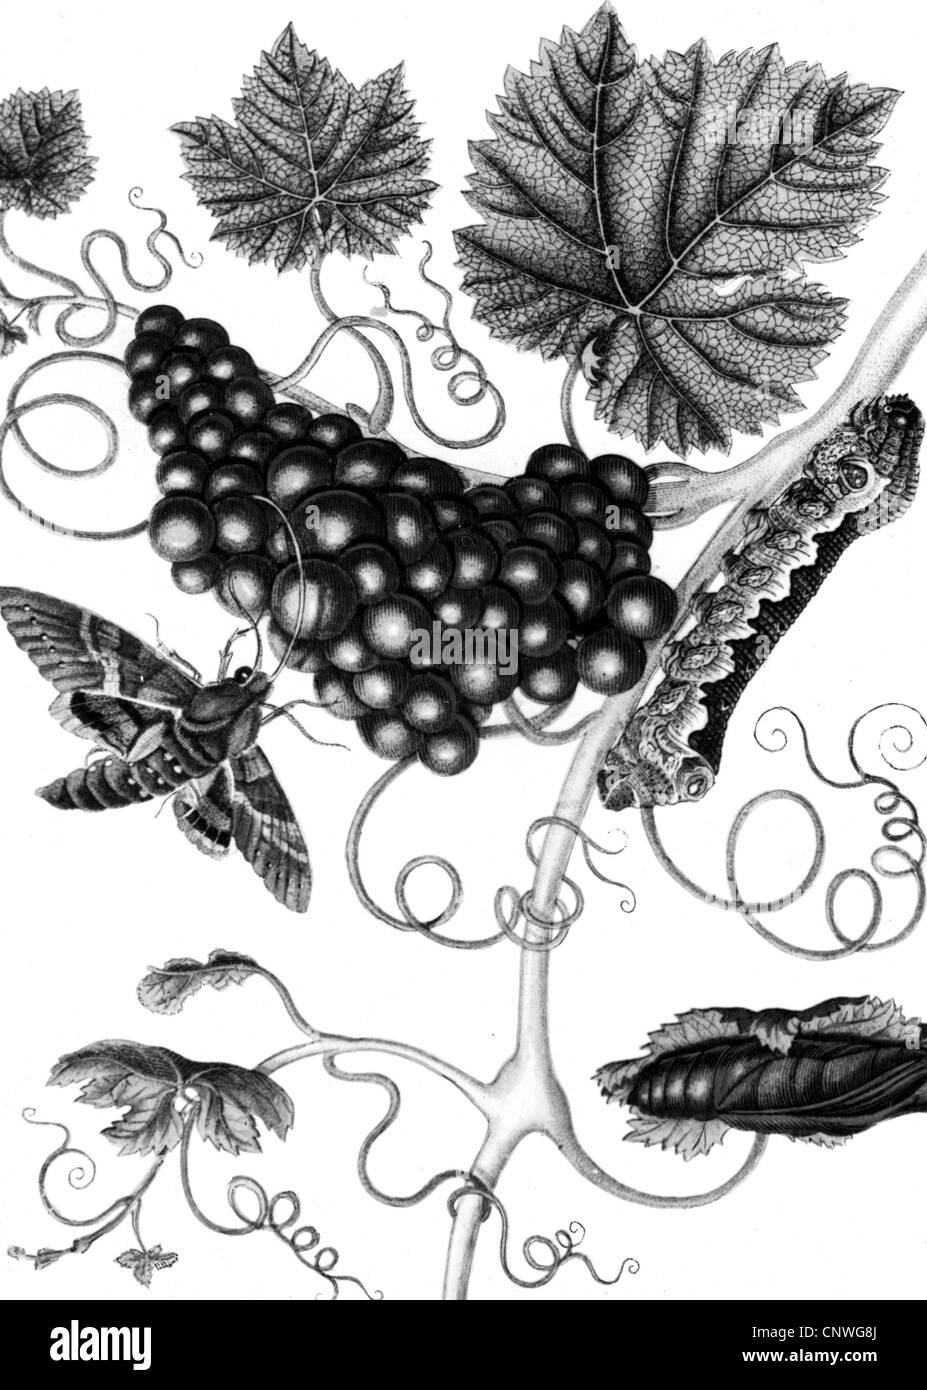 Merian, Maria Sybilla, 1647 - 1717, artista alemán, (pintor, diseñador gráfico) , oevre: vid, racimos de uvas con Claret (Hippotion celerio Hawk-Moth vid), Caterpillar, grabado en cobre, circa 1700, Copyright del artista no ha de ser borrado Foto de stock